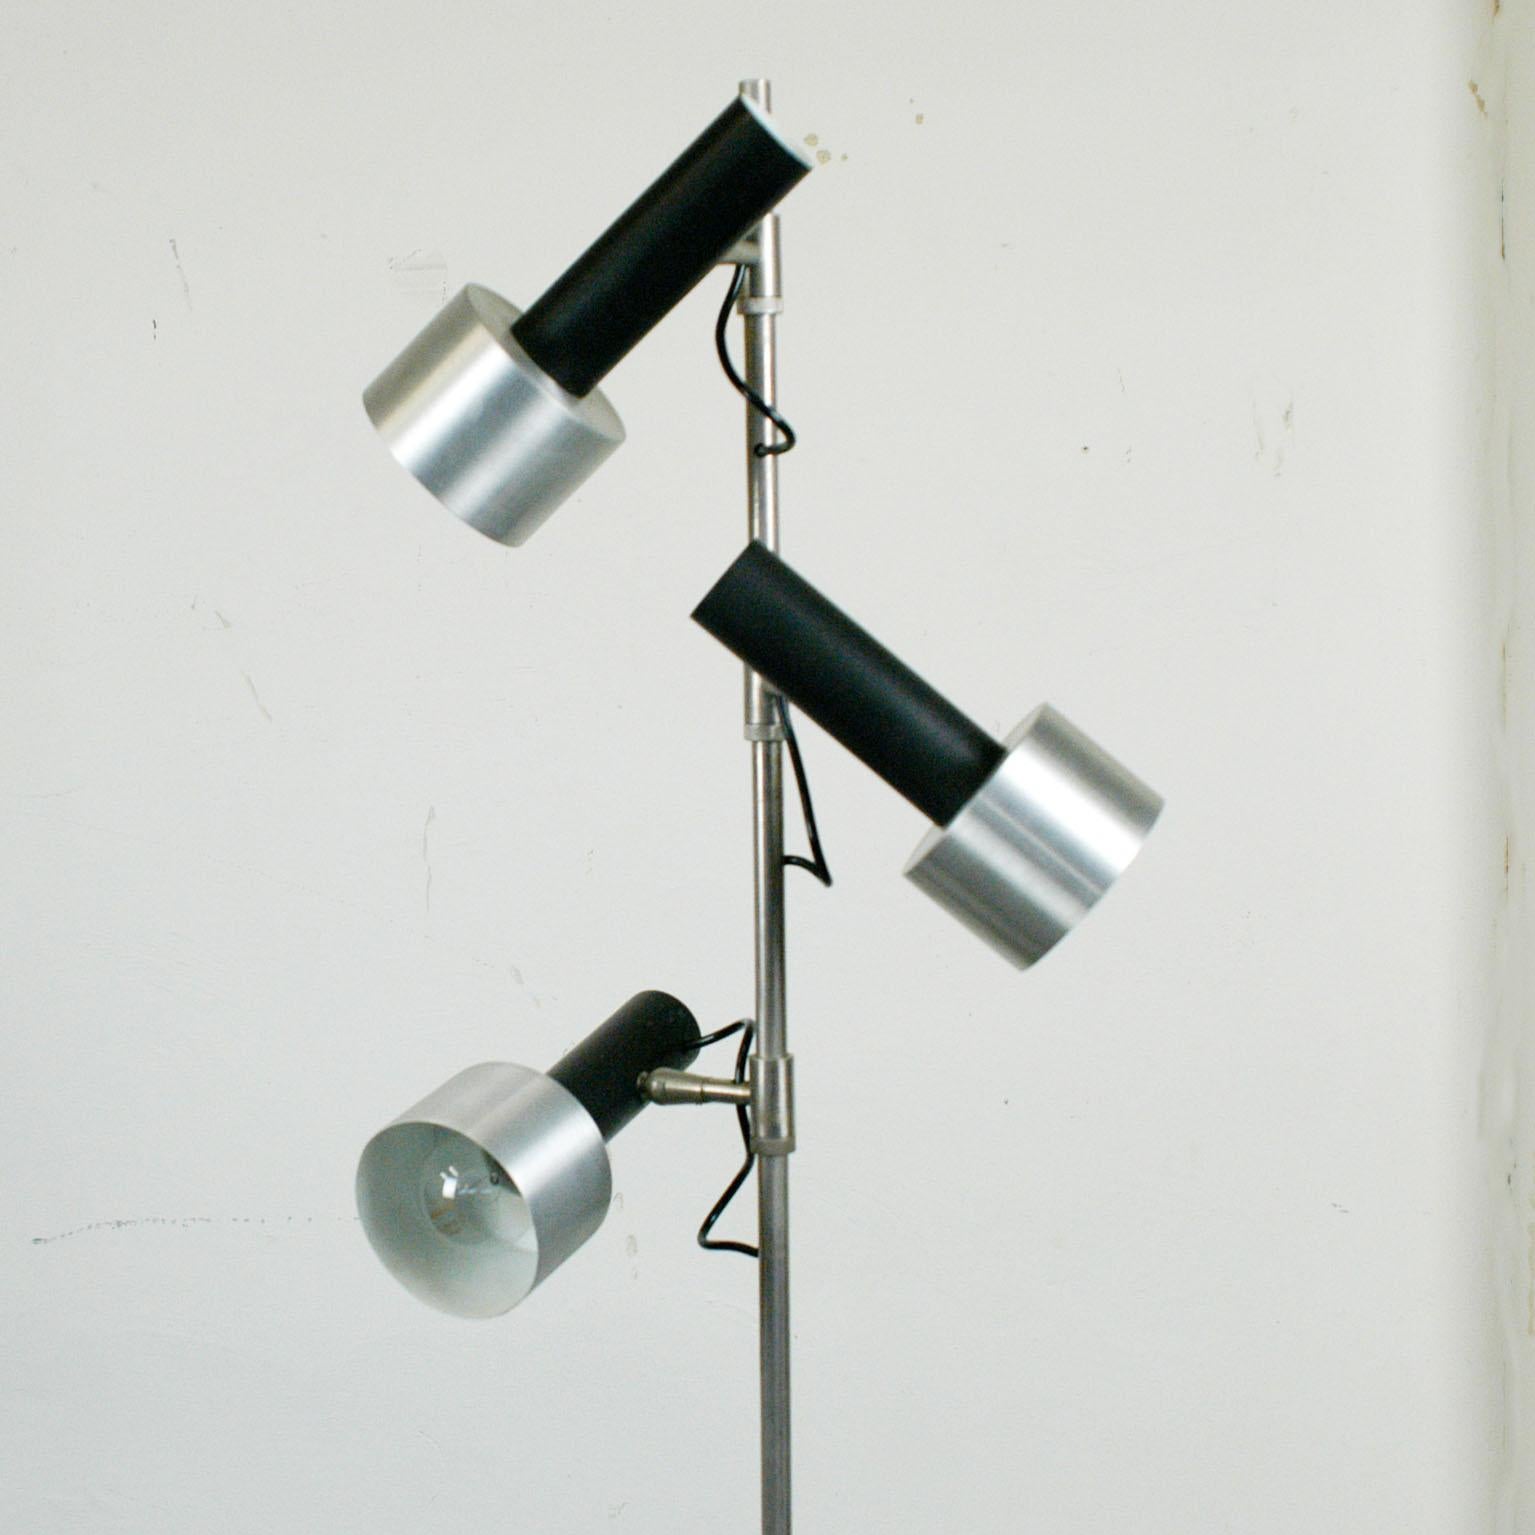 Italian 1960s Chrome Floor Spotlamp by Stilux (Moderne)